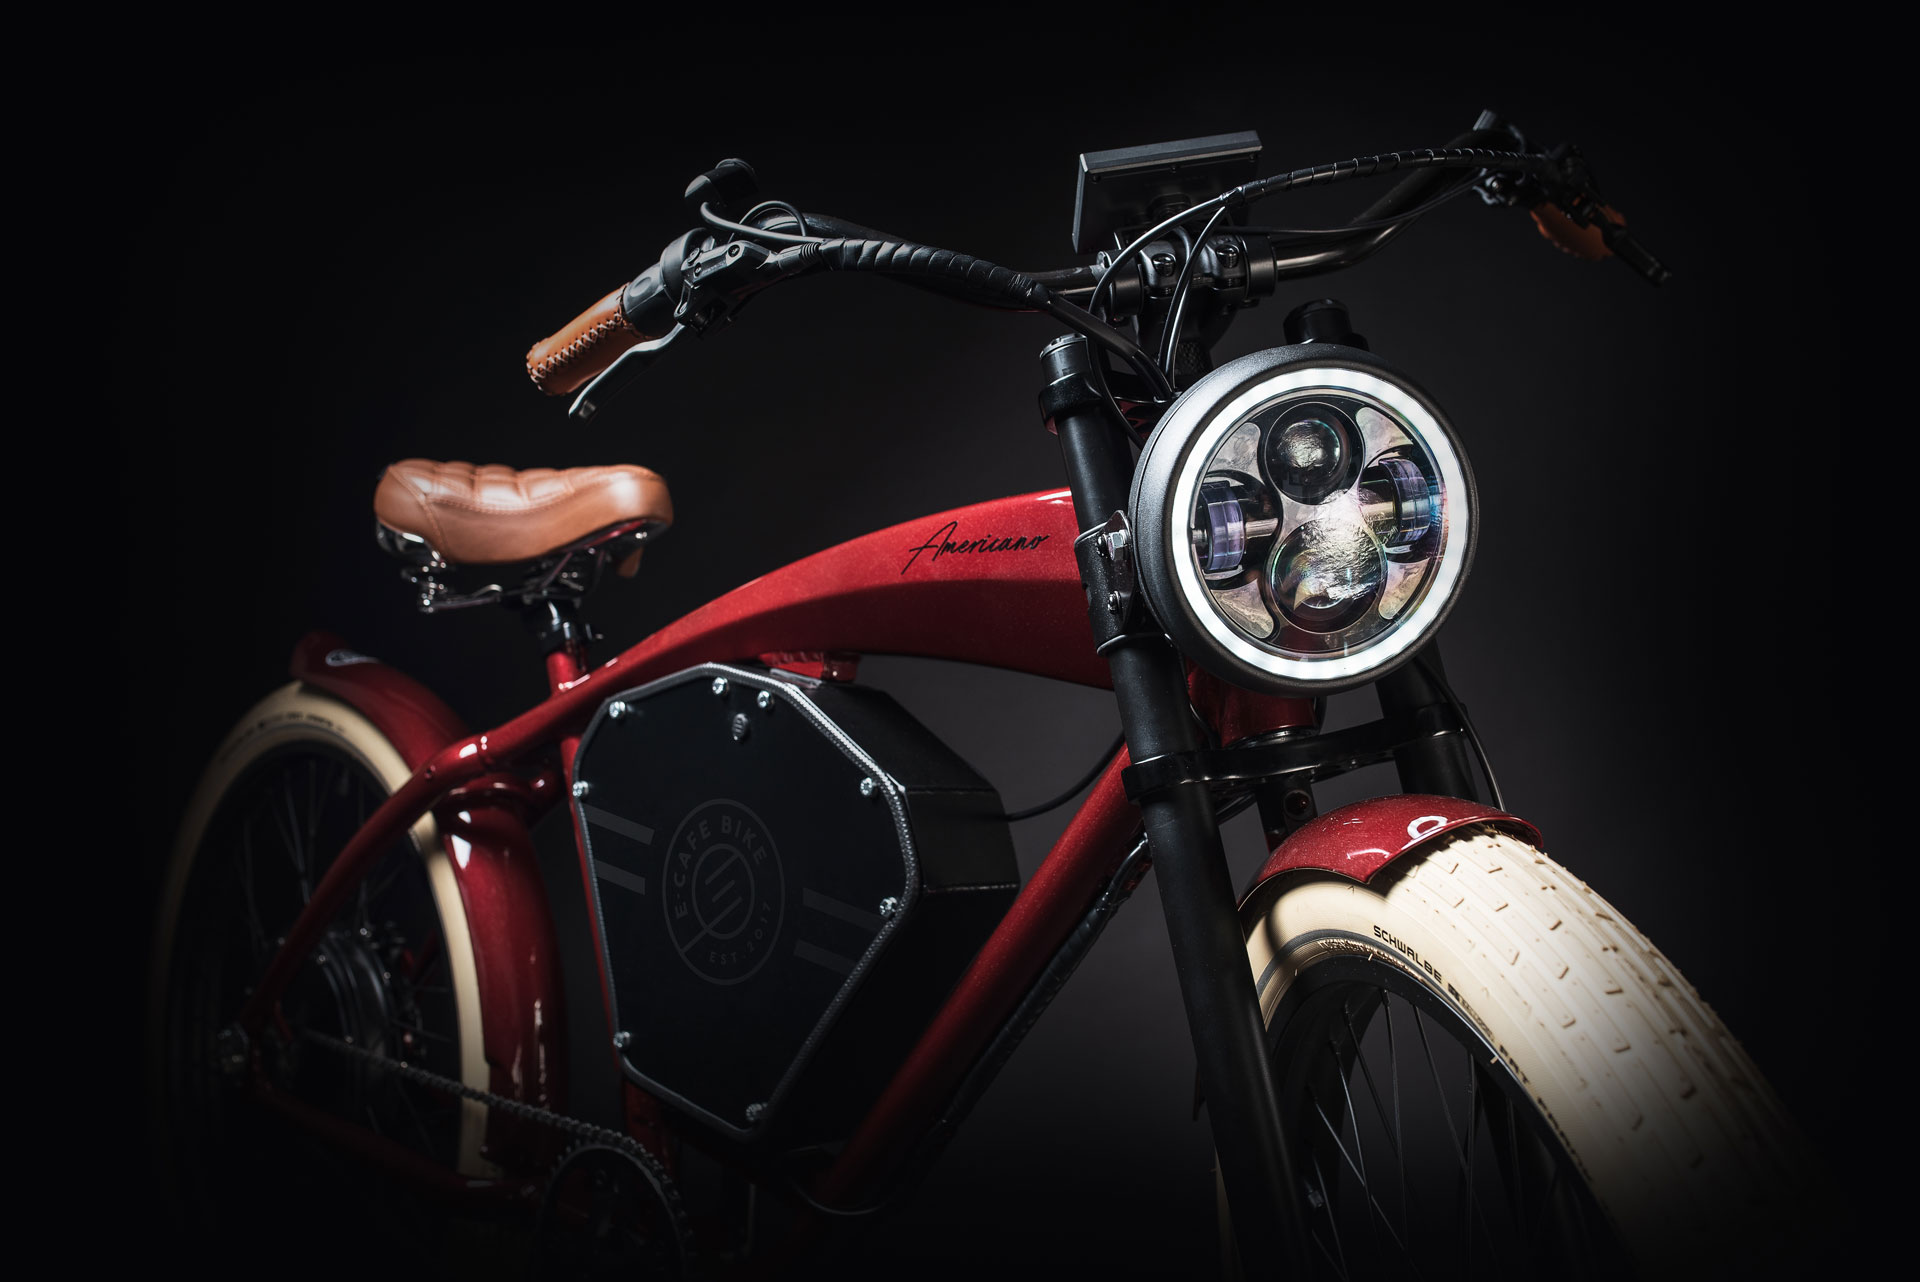 Ikonický zakázkový model ve stylu legendárních starých Indian motocyklů